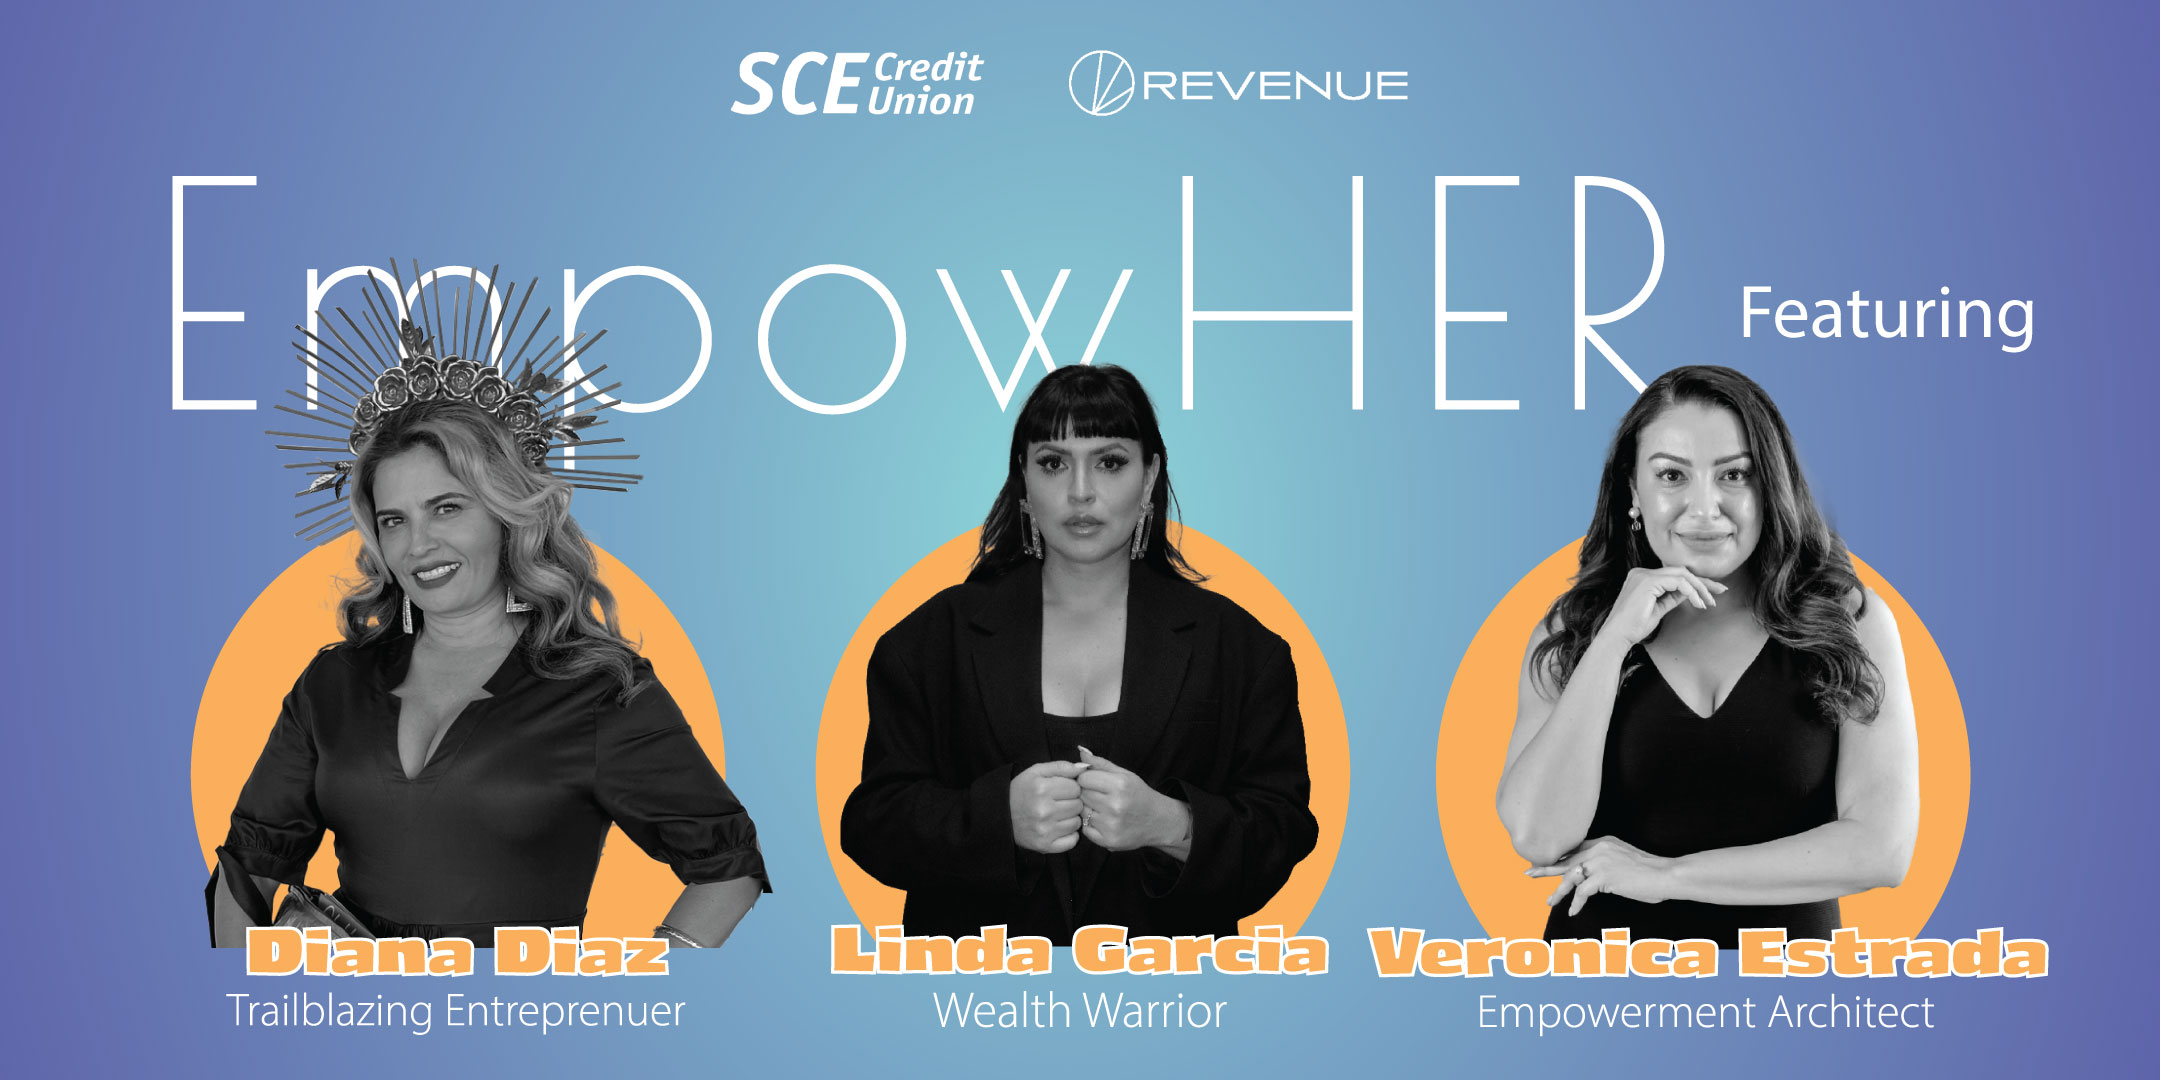 EmpowHer featuring Diana Diaz, Trailblazing Entreprenuer; Linda Garcia, Wealth Warrior; and Veronica Estrada, Empowerment Architect